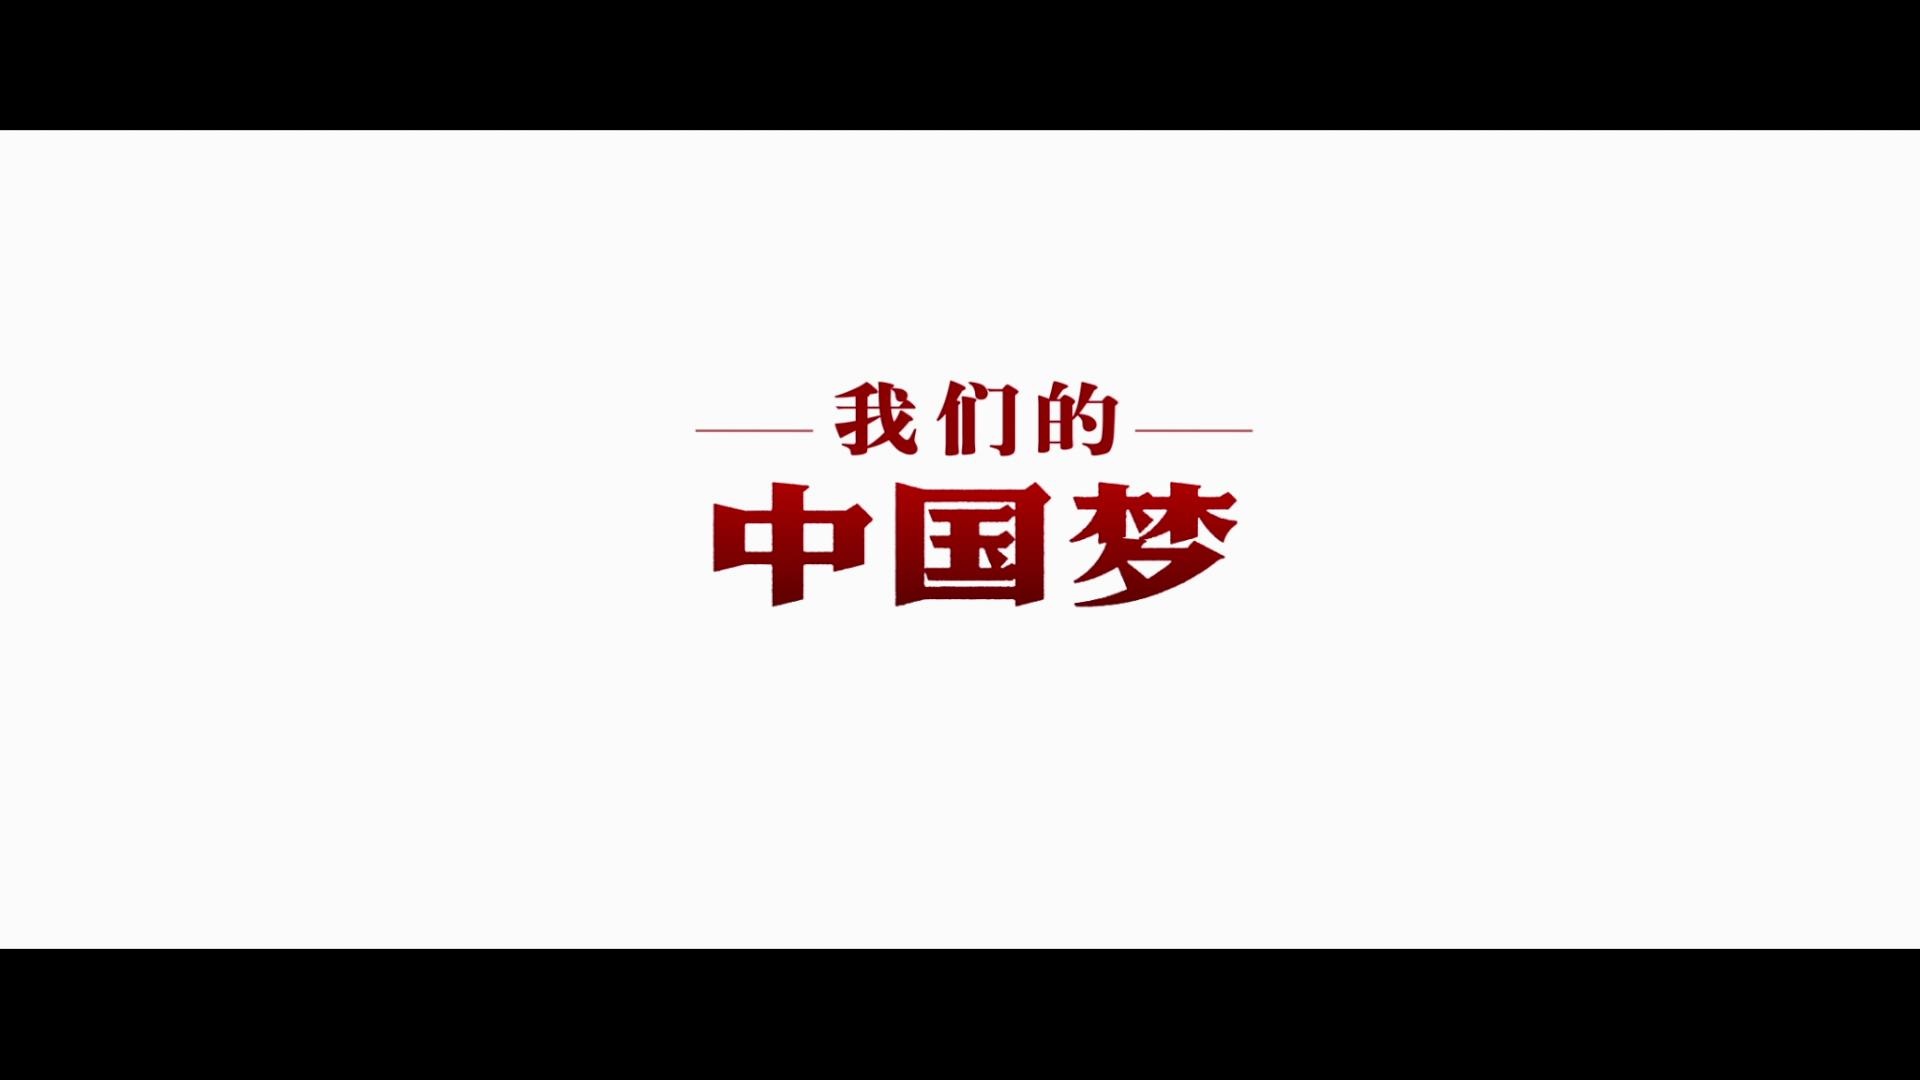 《我们的中国梦》系列公益片院线放映引强烈反响_华语_电影网_1905.com